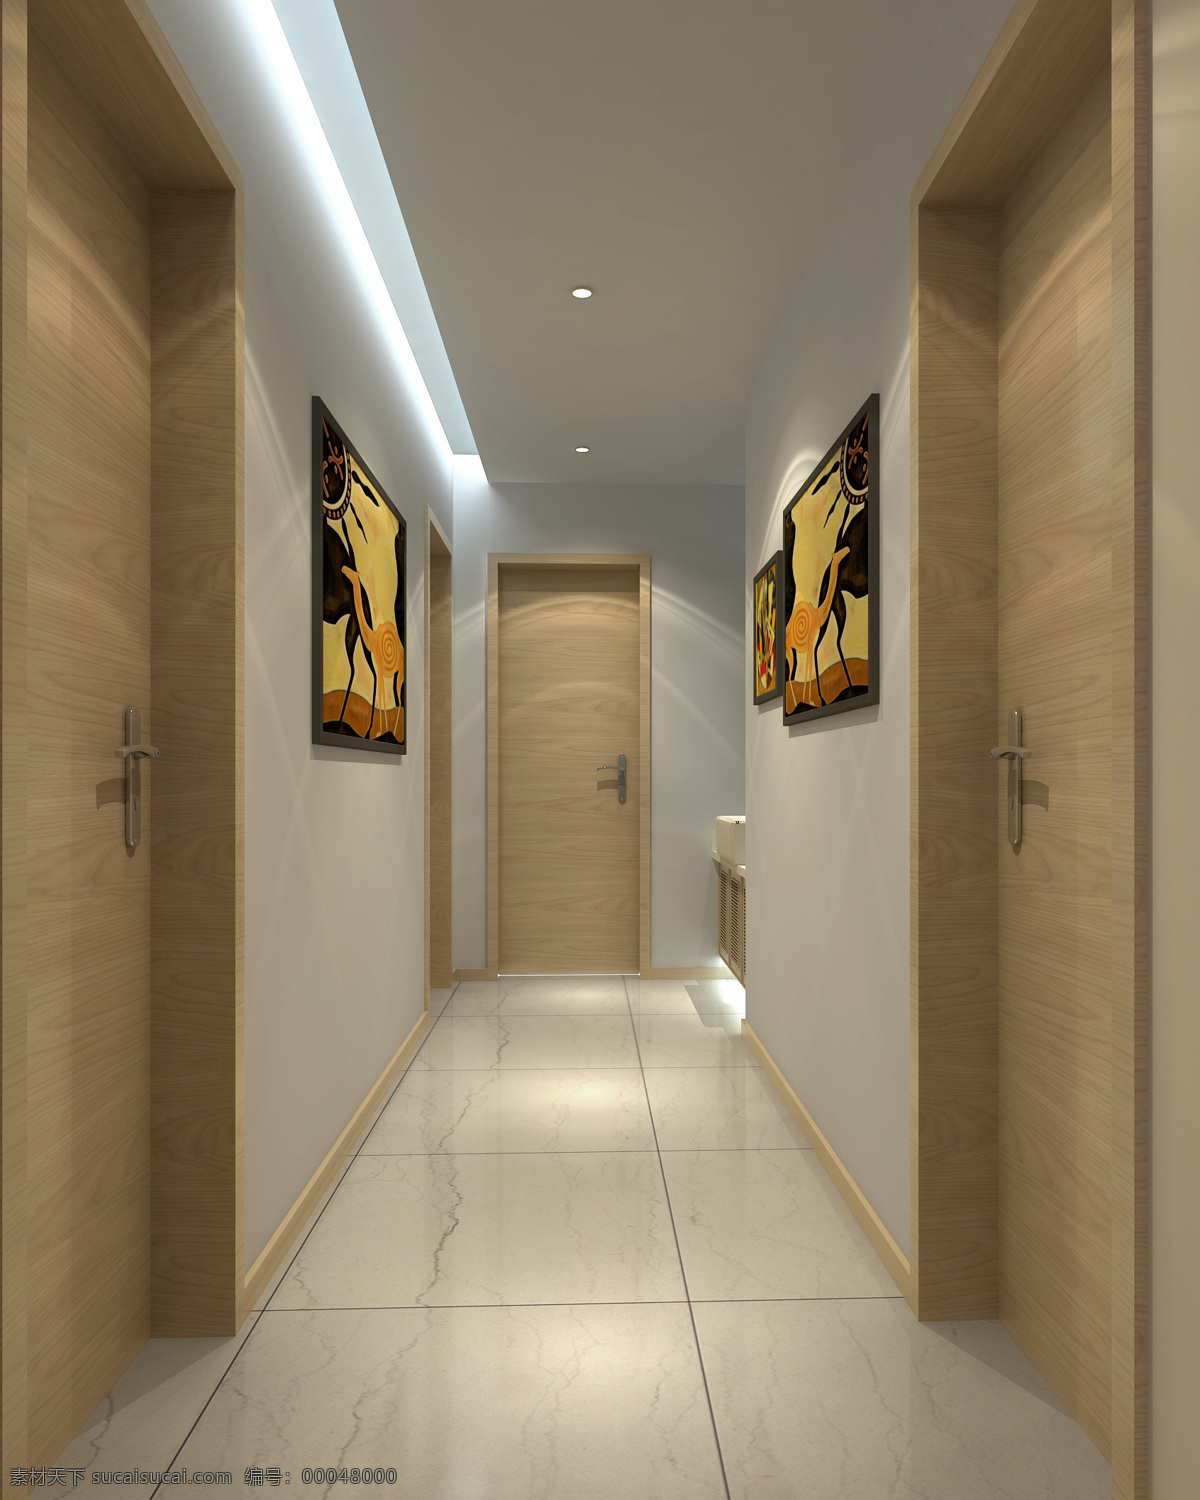 走廊 灯带 环境设计 家居设计 墙画 室内设计 家居装饰素材